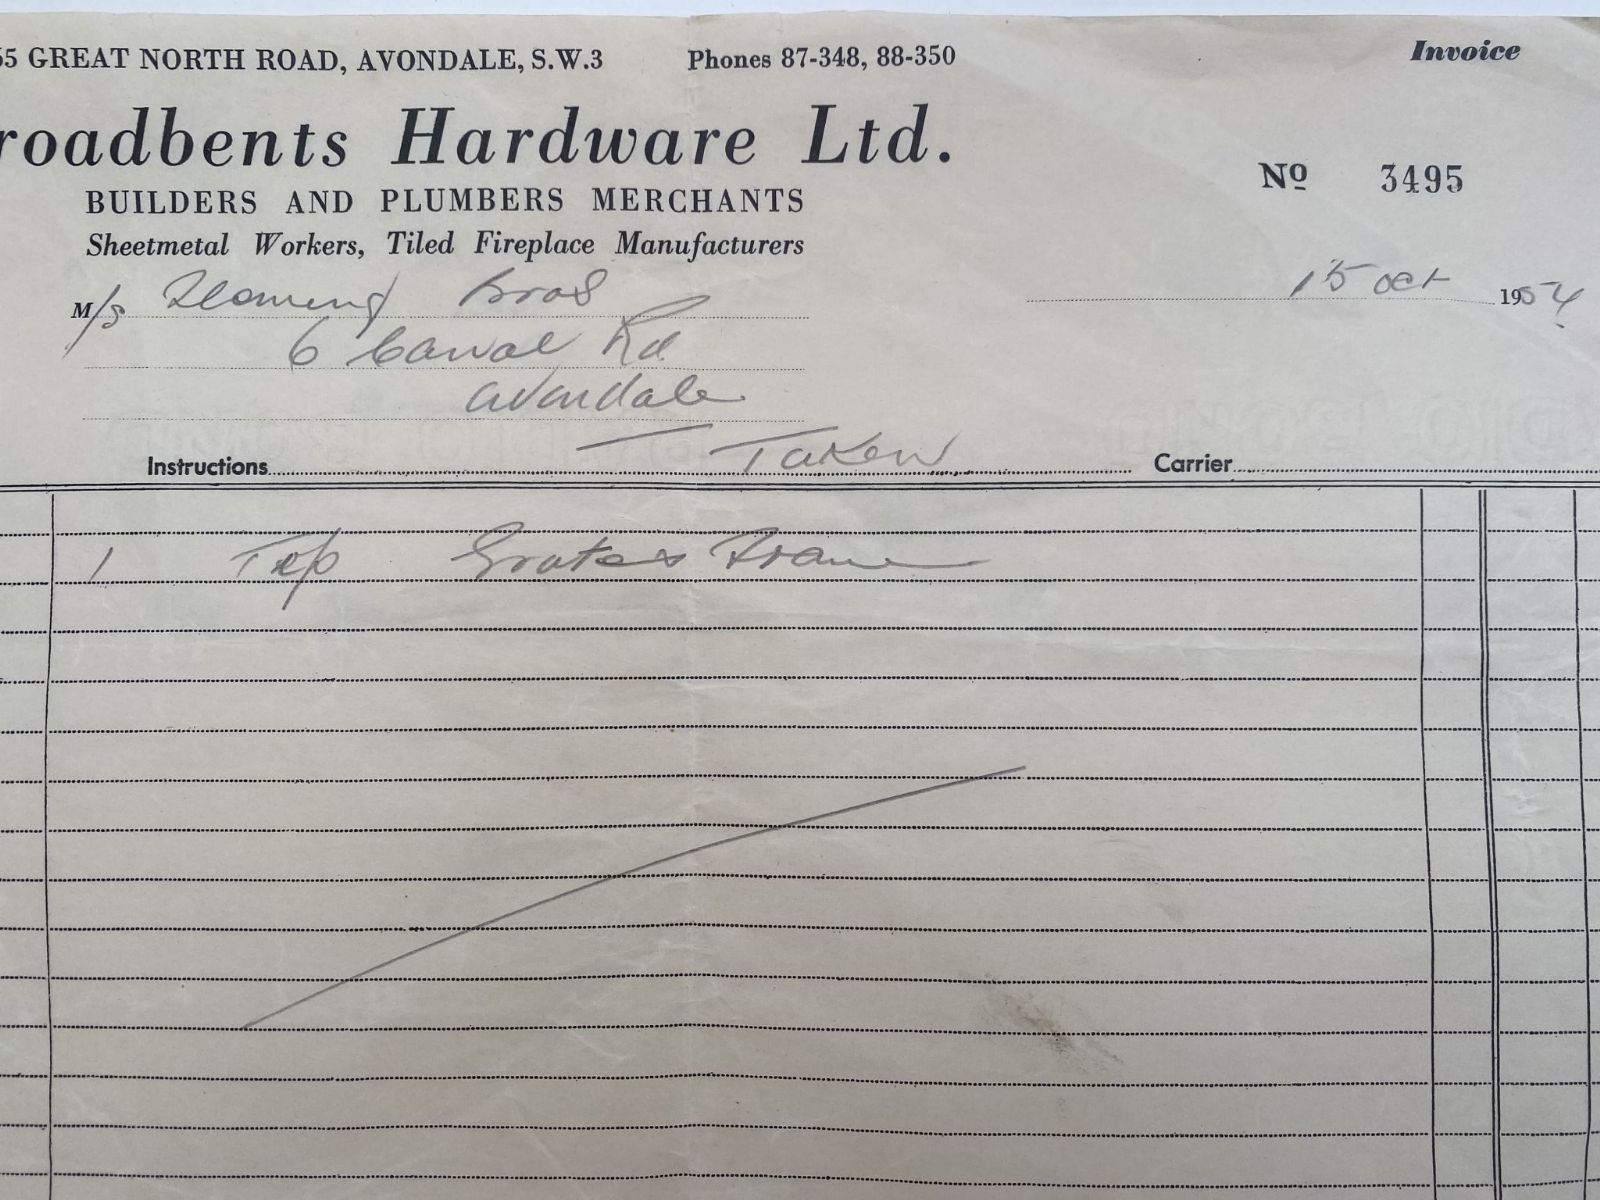 OLD INVOICE: Broadbents Hardware Ltd - Builders & Plumbers Merchants 1954